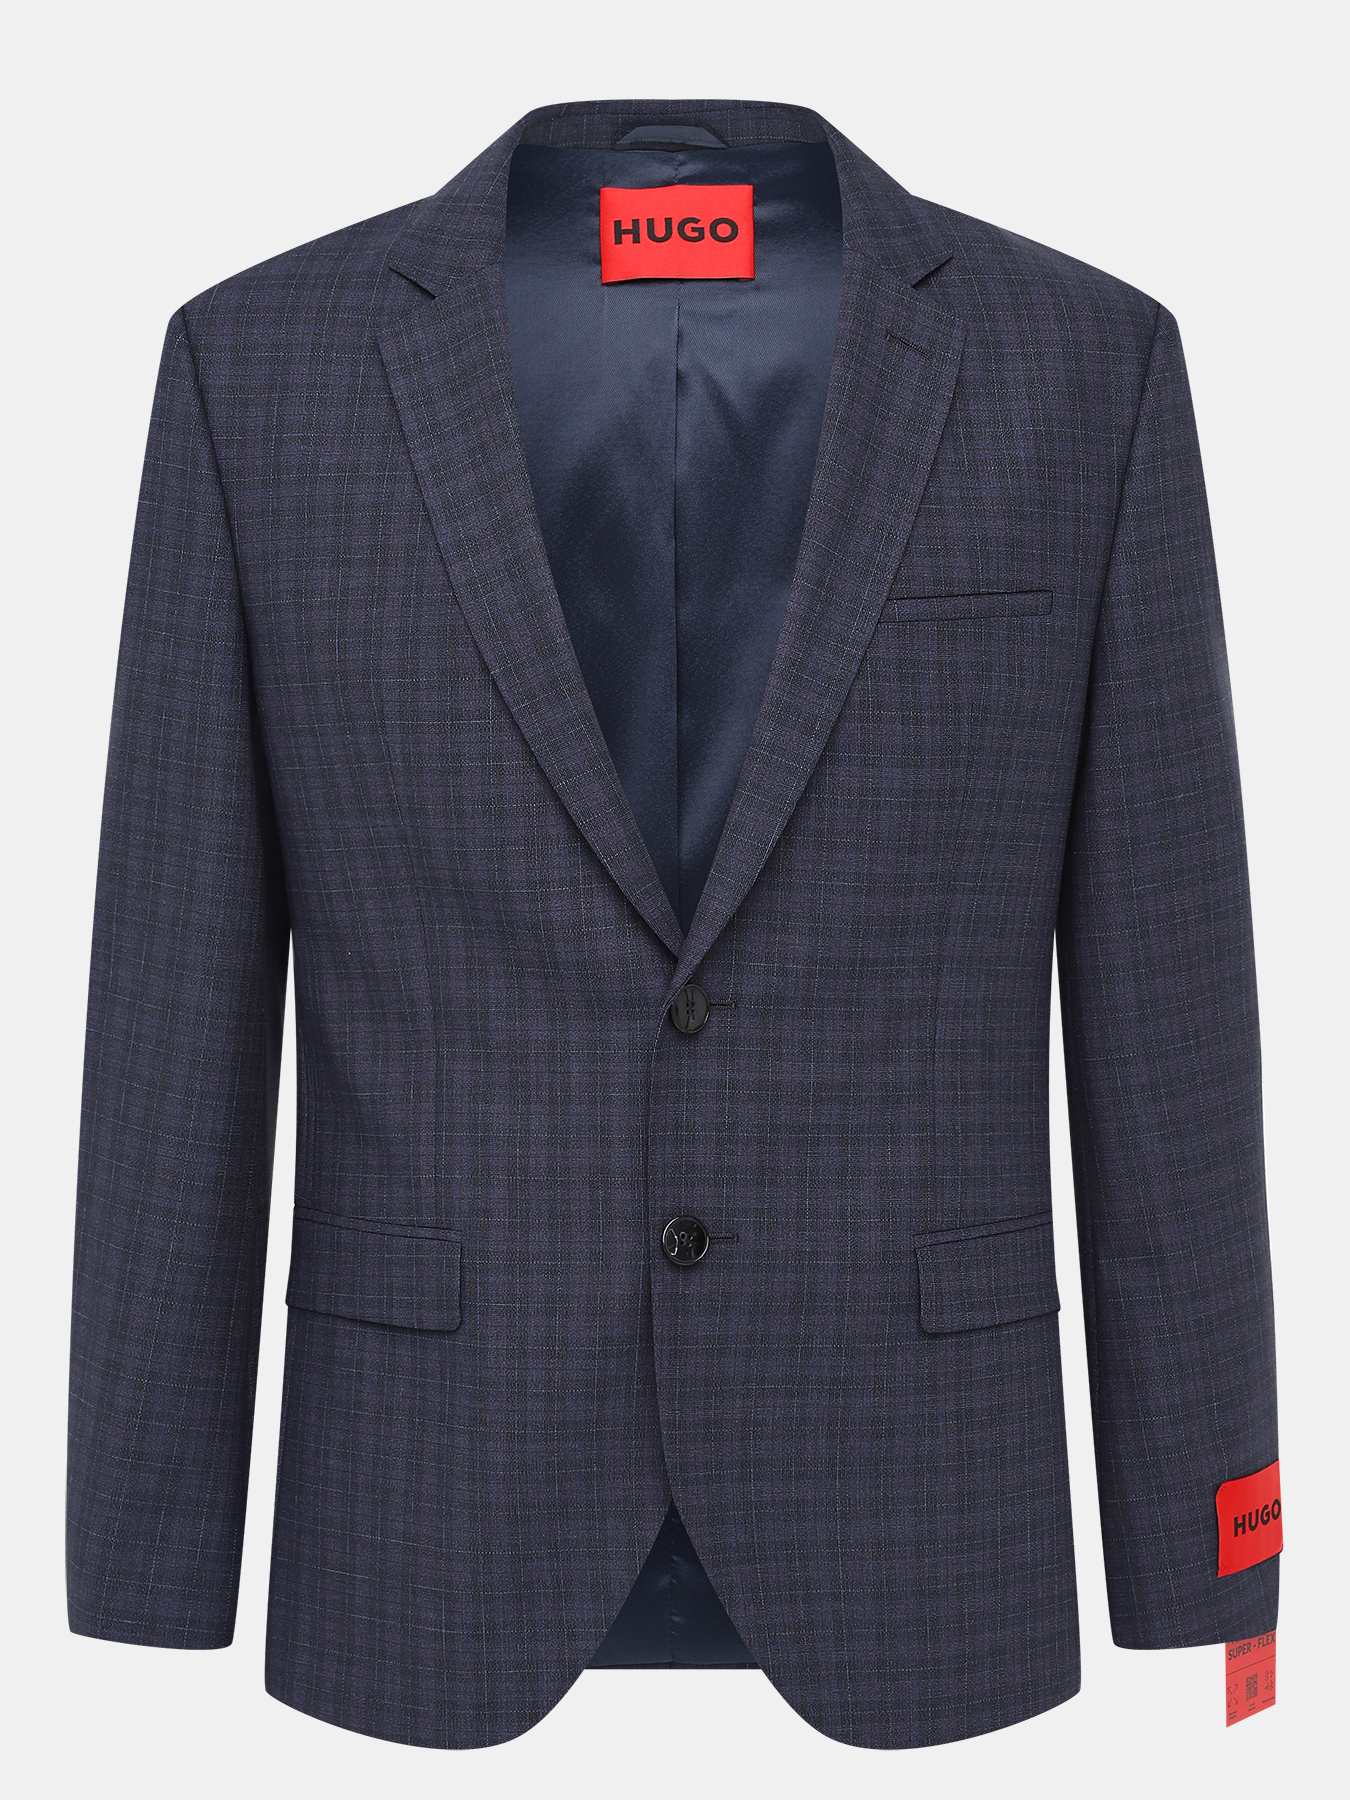 Пиджак Arti HUGO 423619-025, цвет темно-синий, размер 48